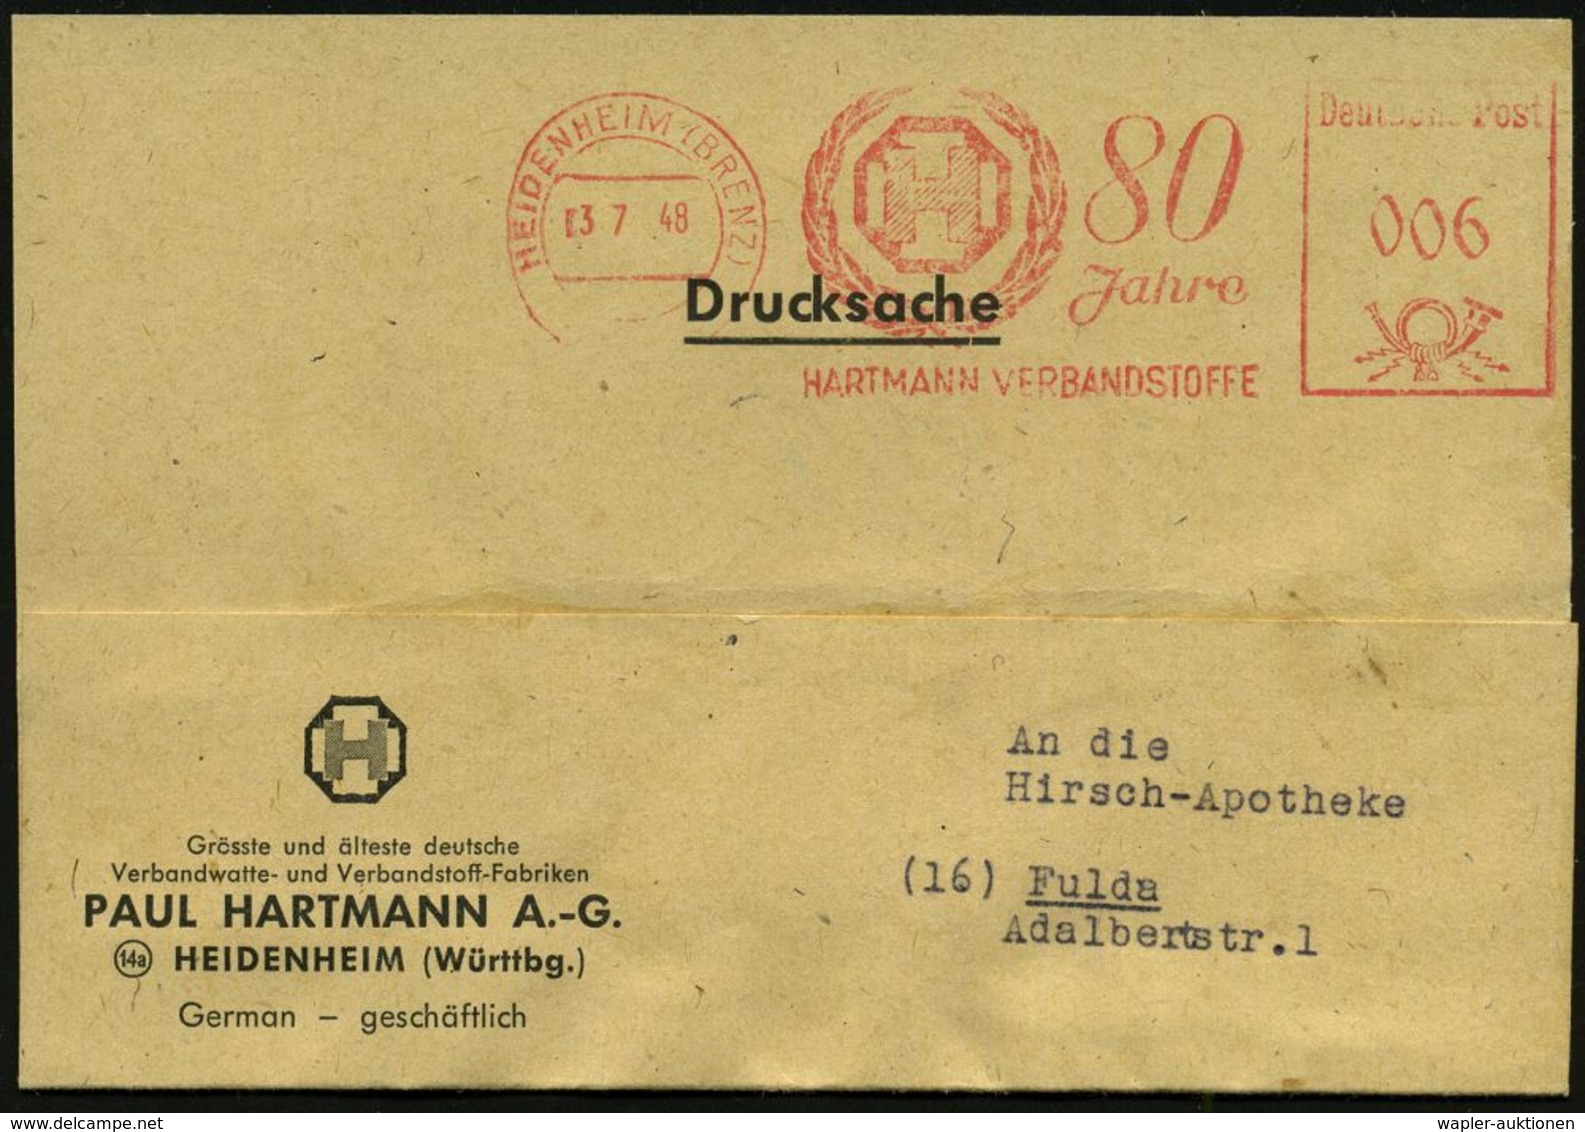 MEDIZINISCHE AUSRÜSTUNG & INSTRUMENTE : HEIDENHEIM (BRENZ)/ 80 Jahre/ HARTMANN VERBANDSSTOFFE 1948 (3.7.) Jubil.-AFS (Mo - Médecine